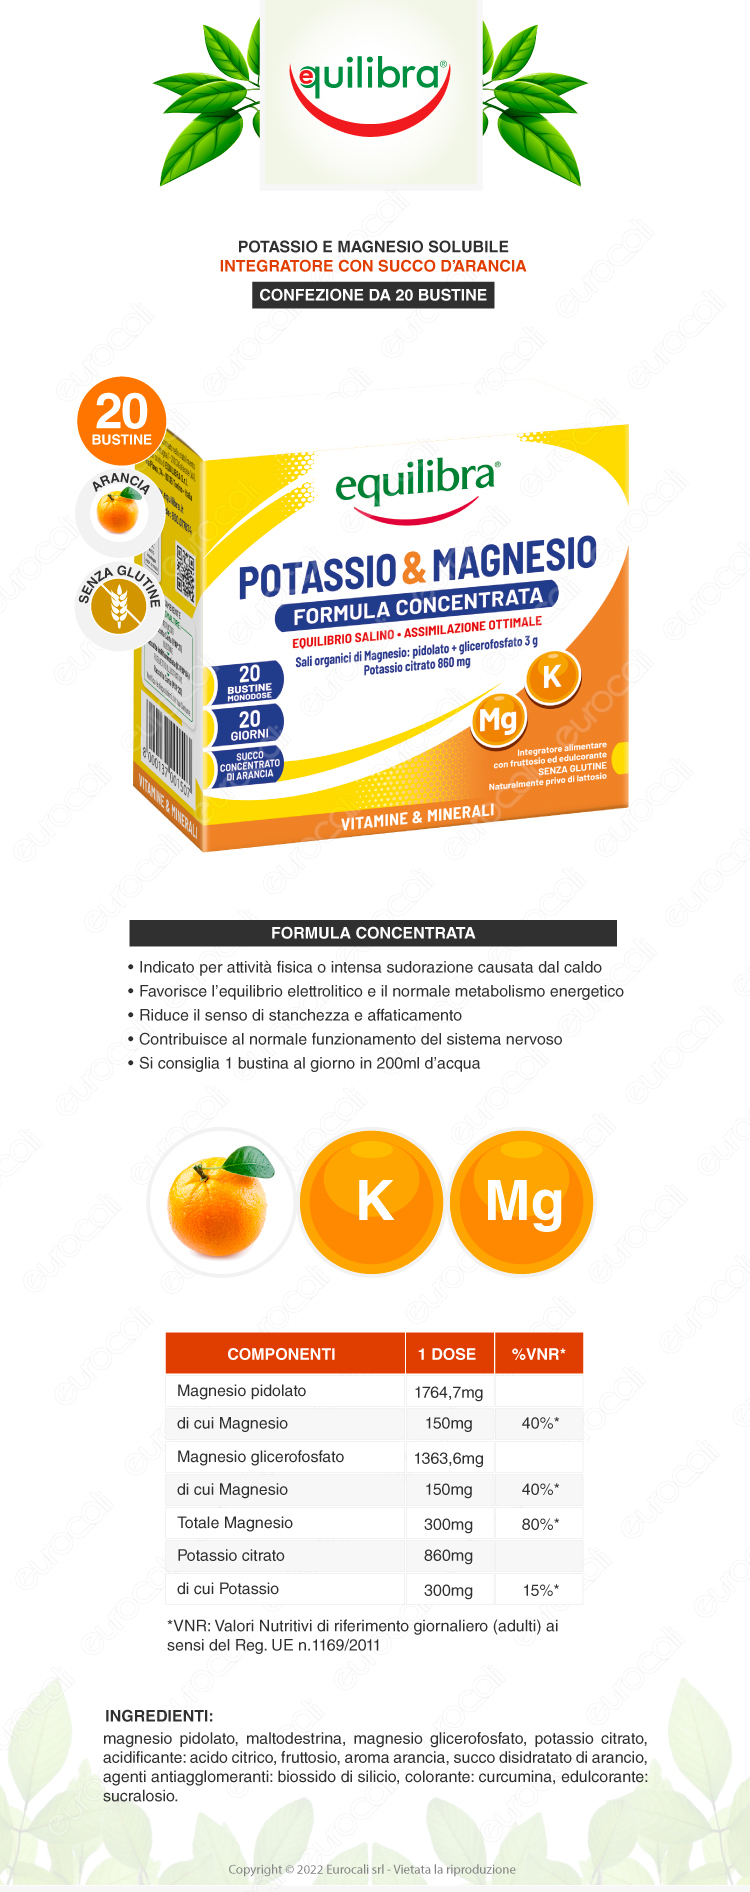 equilibra integratore potassio magnesio formula concentrata vitamine minerali